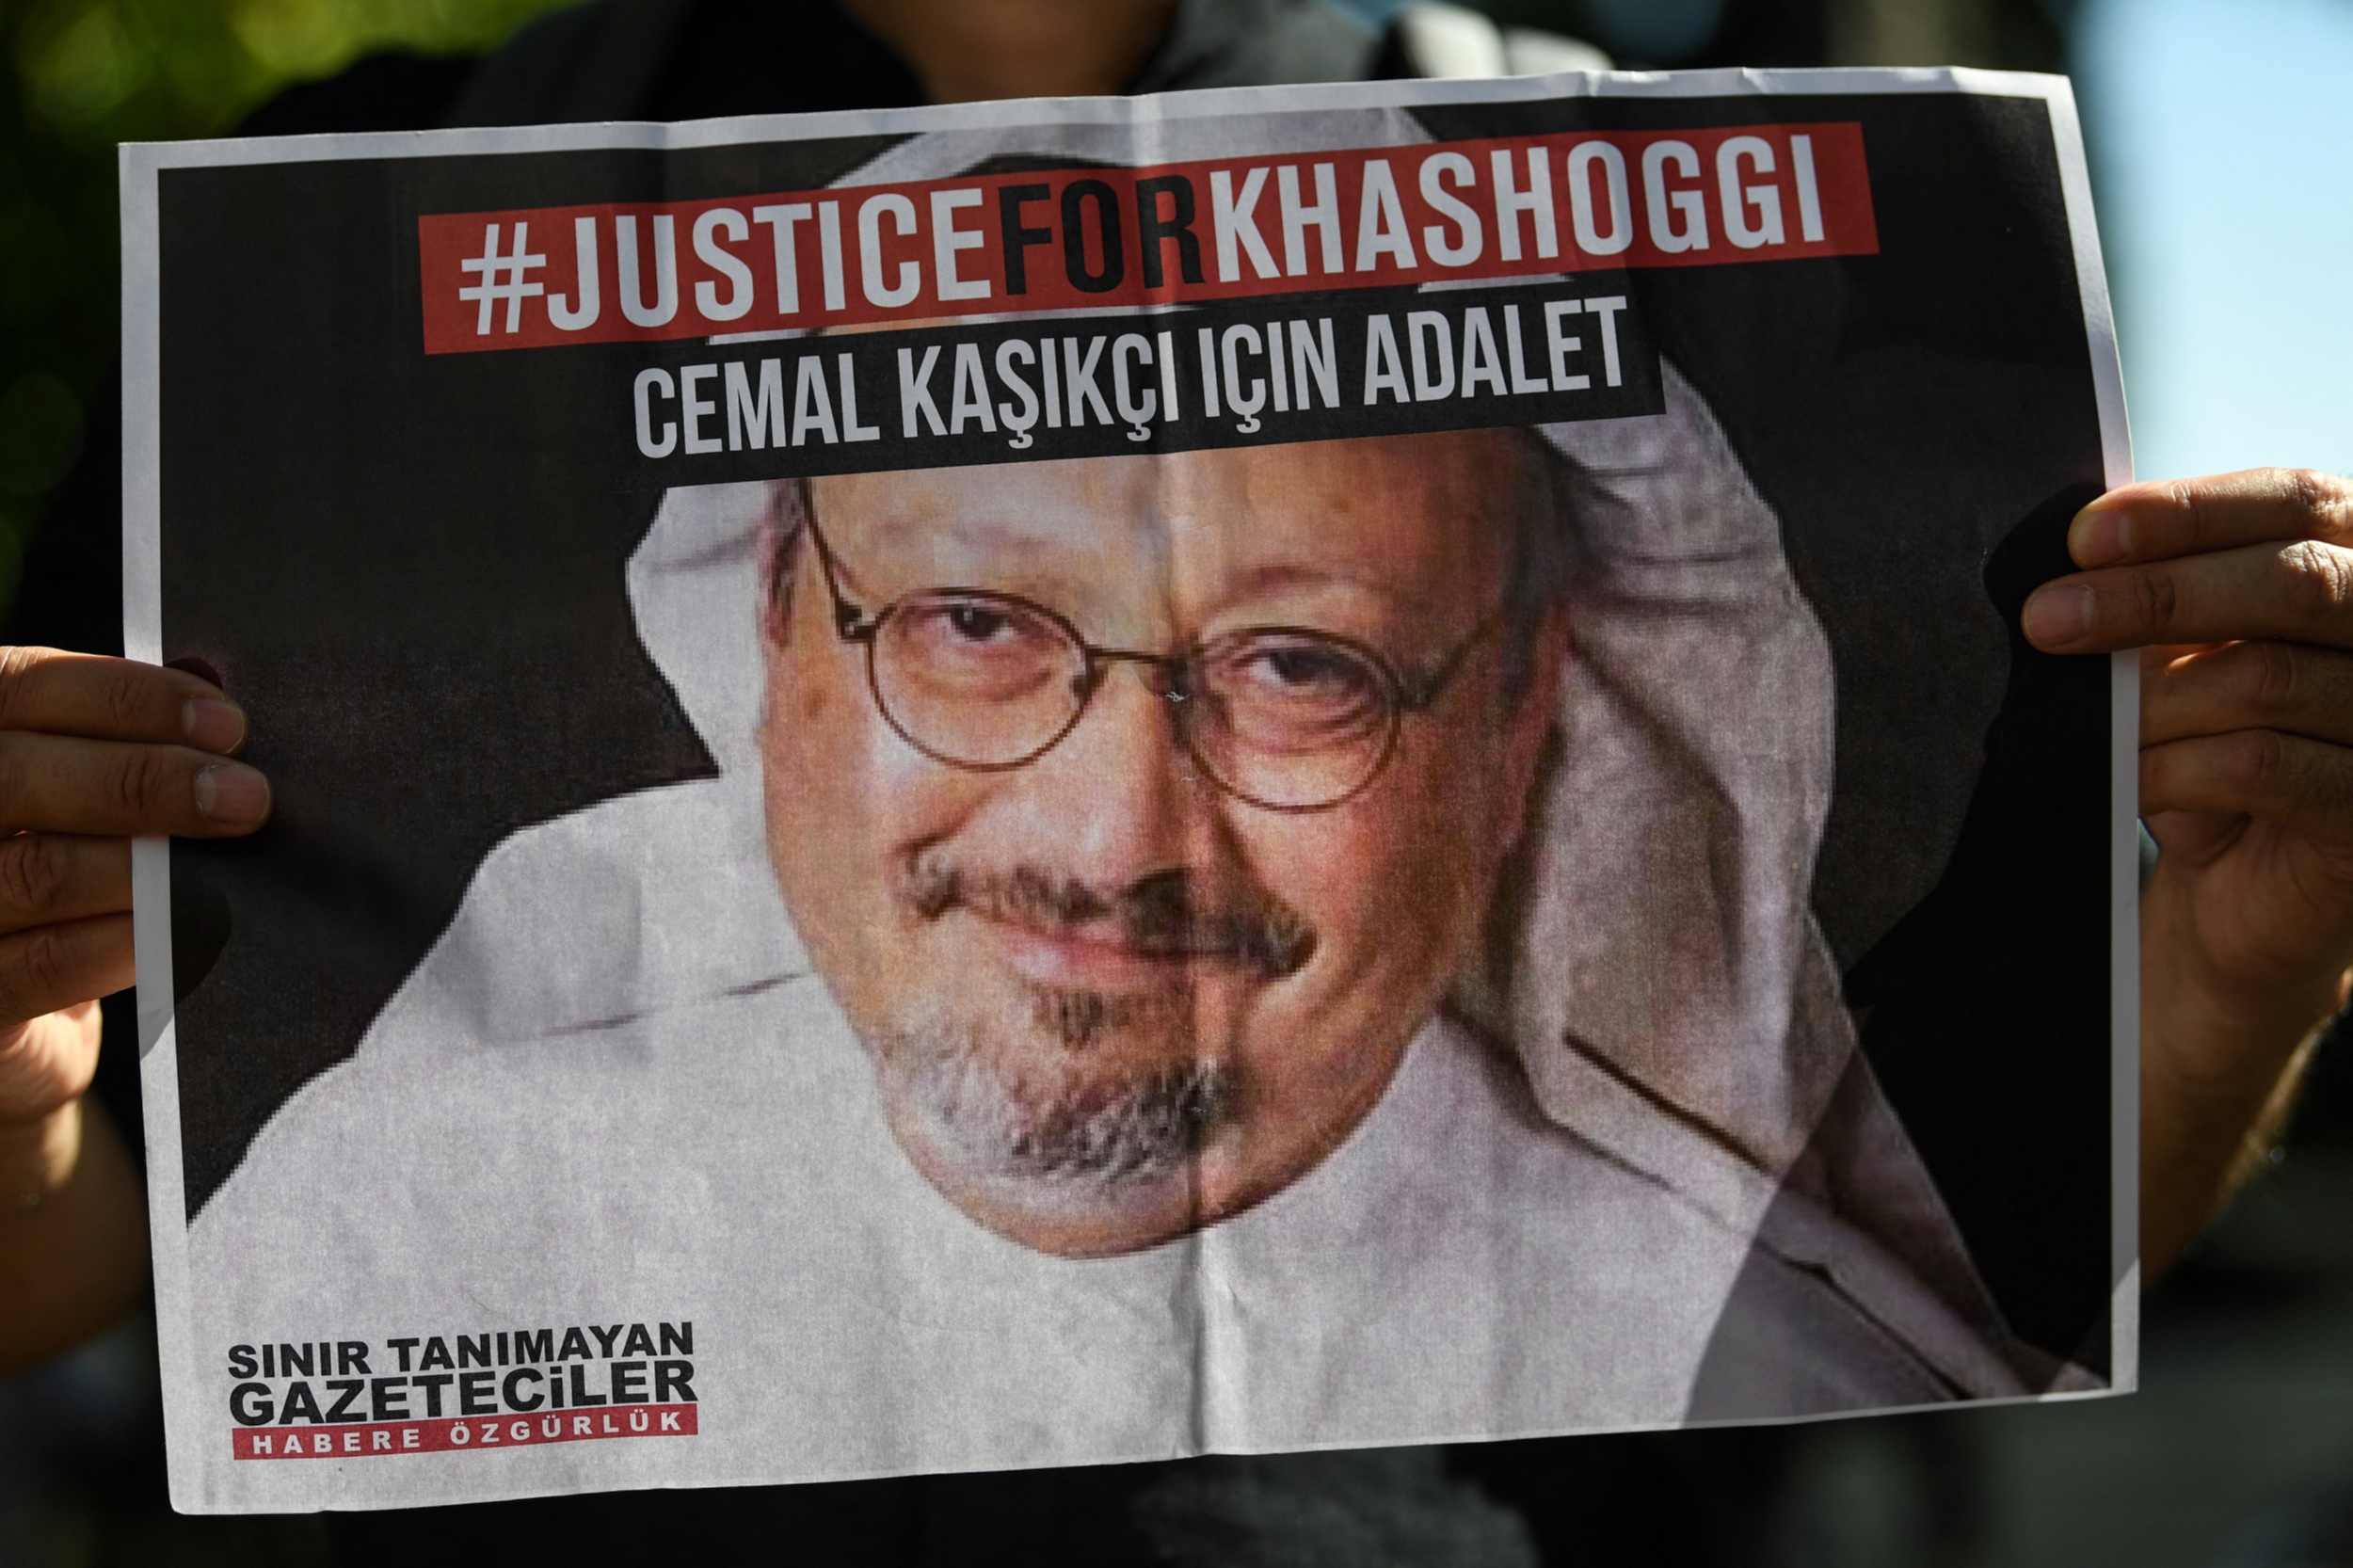 Les apparitions des trois hommes confortent les doutes quant à l’honnêteté de Riyad, qui affirme demander des comptes aux assassins de Jamal Khashoggi (Reuters)